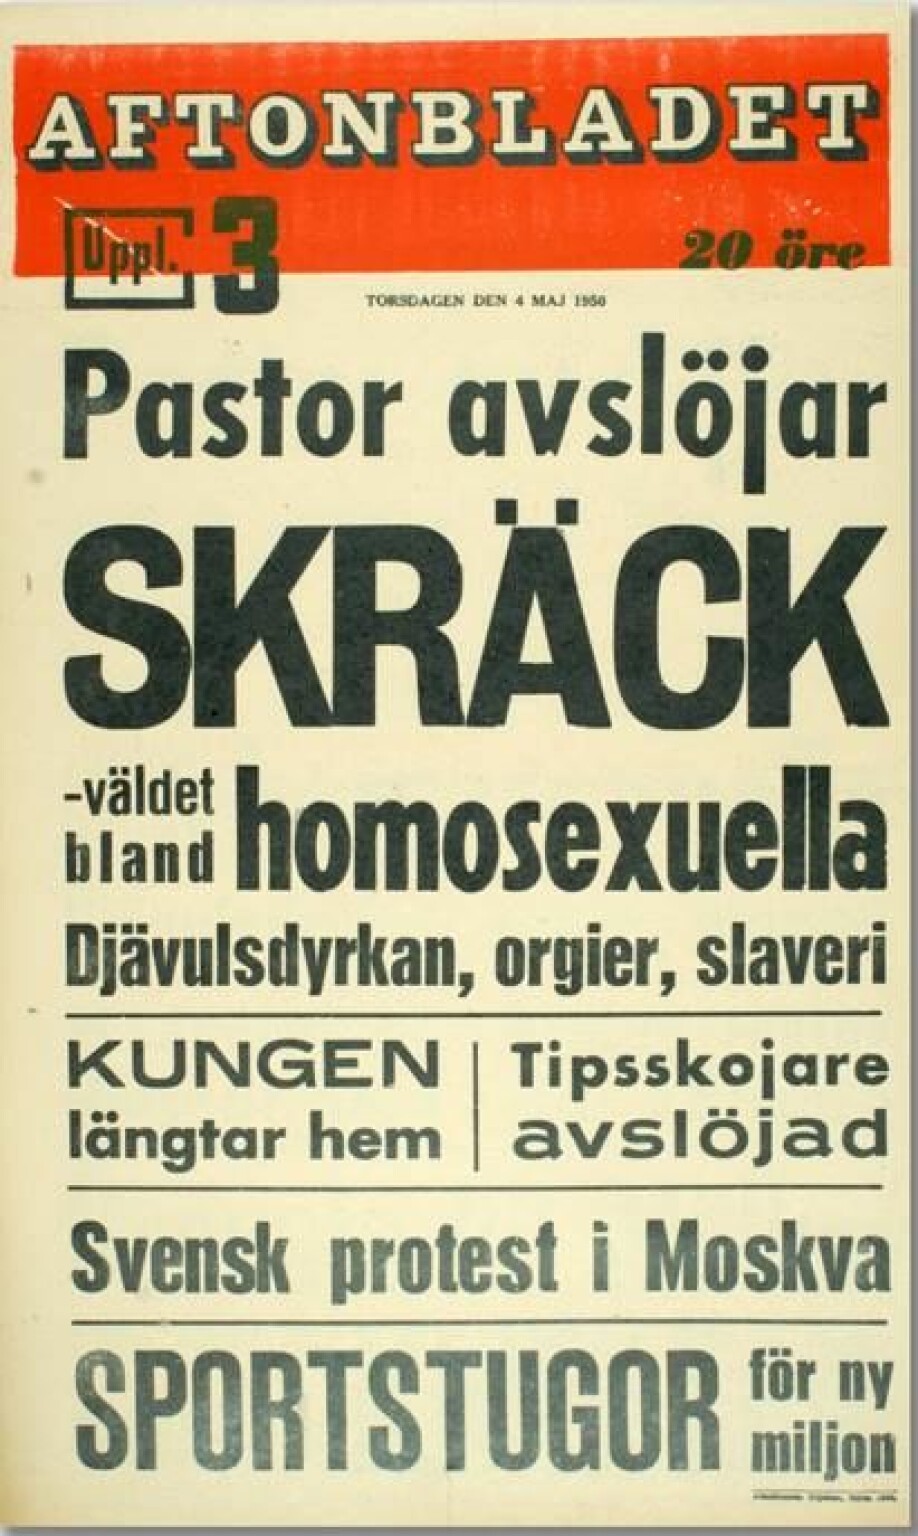 Forsiden i sin helhet. (Foto: faksimile fra Aftonbladet)